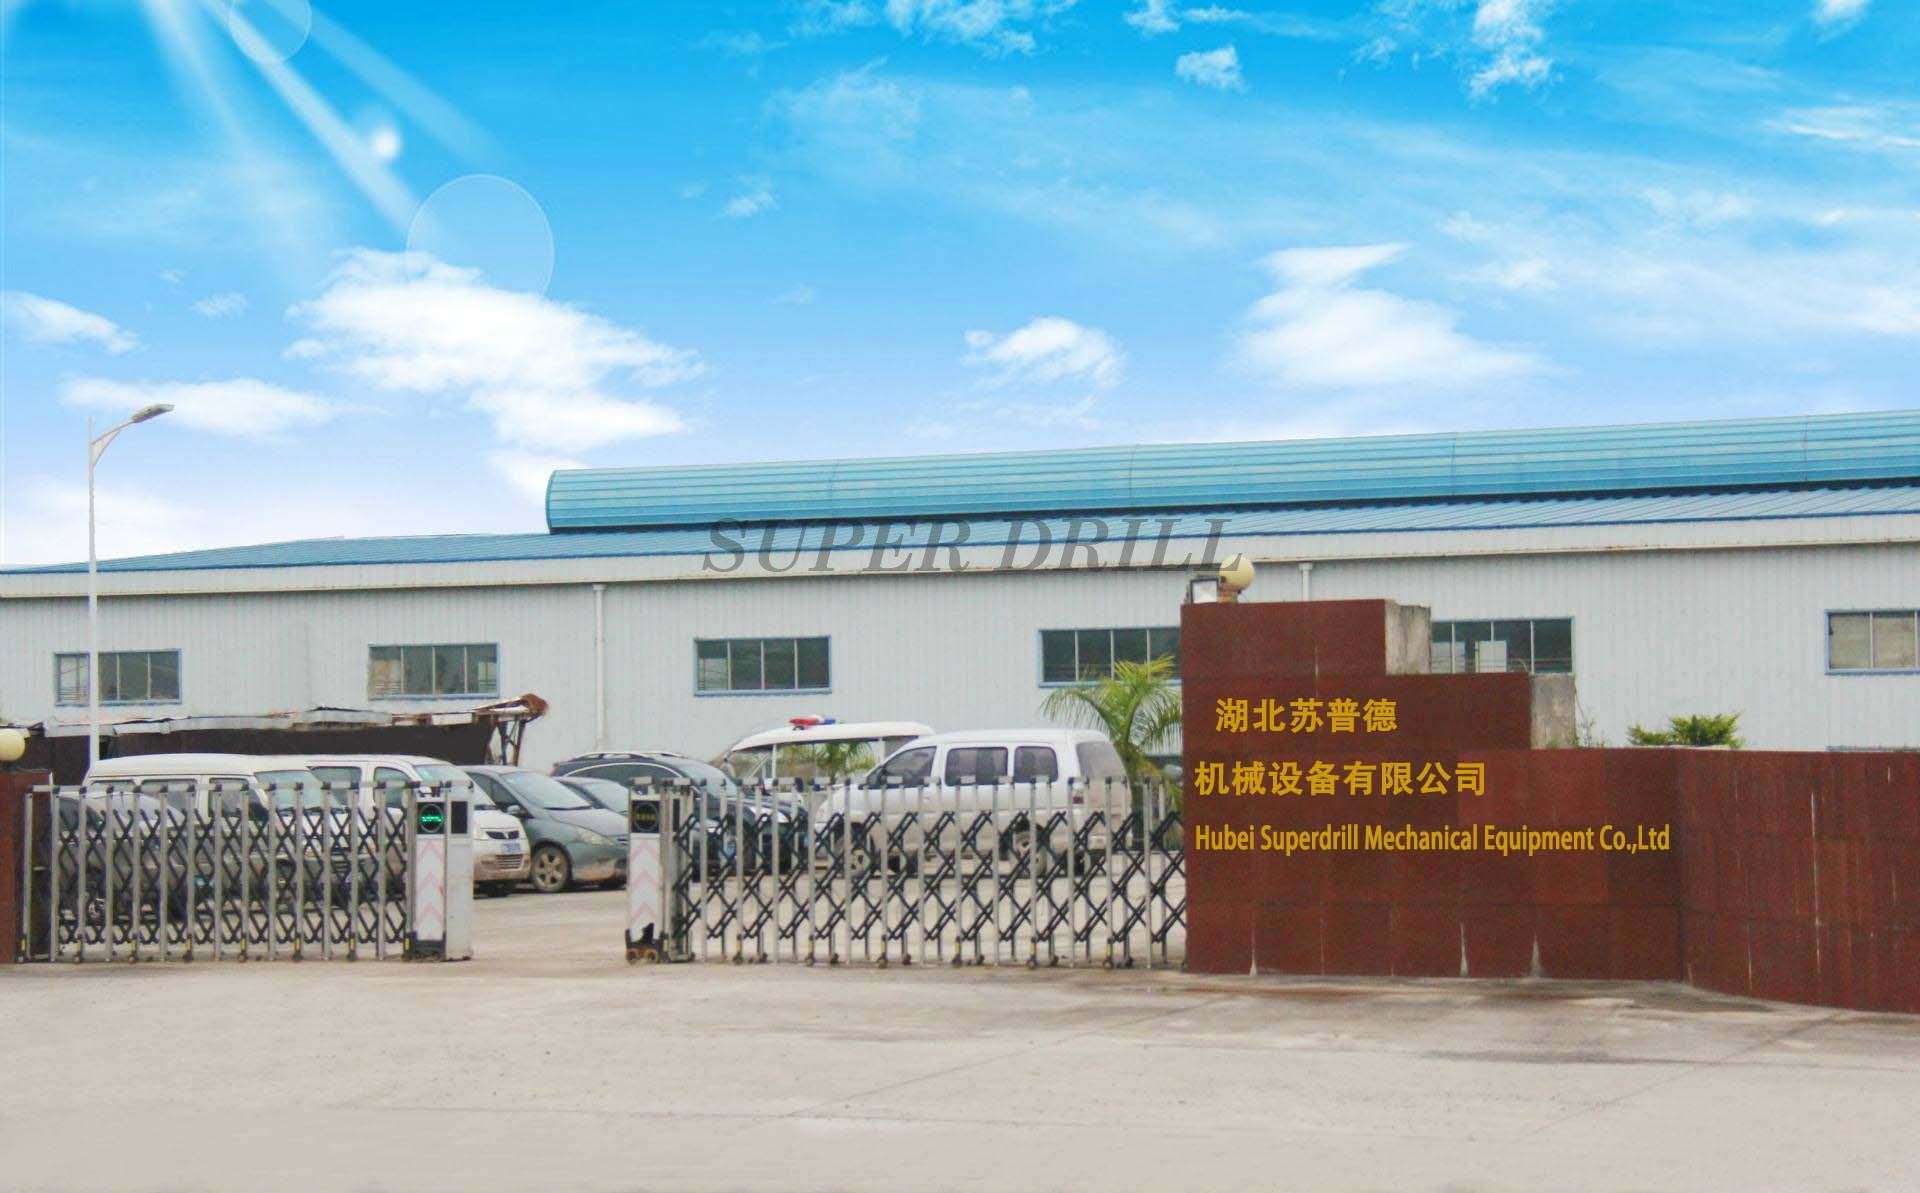 Hubei Superdrill Mechnical Equipment Co.,Ltd